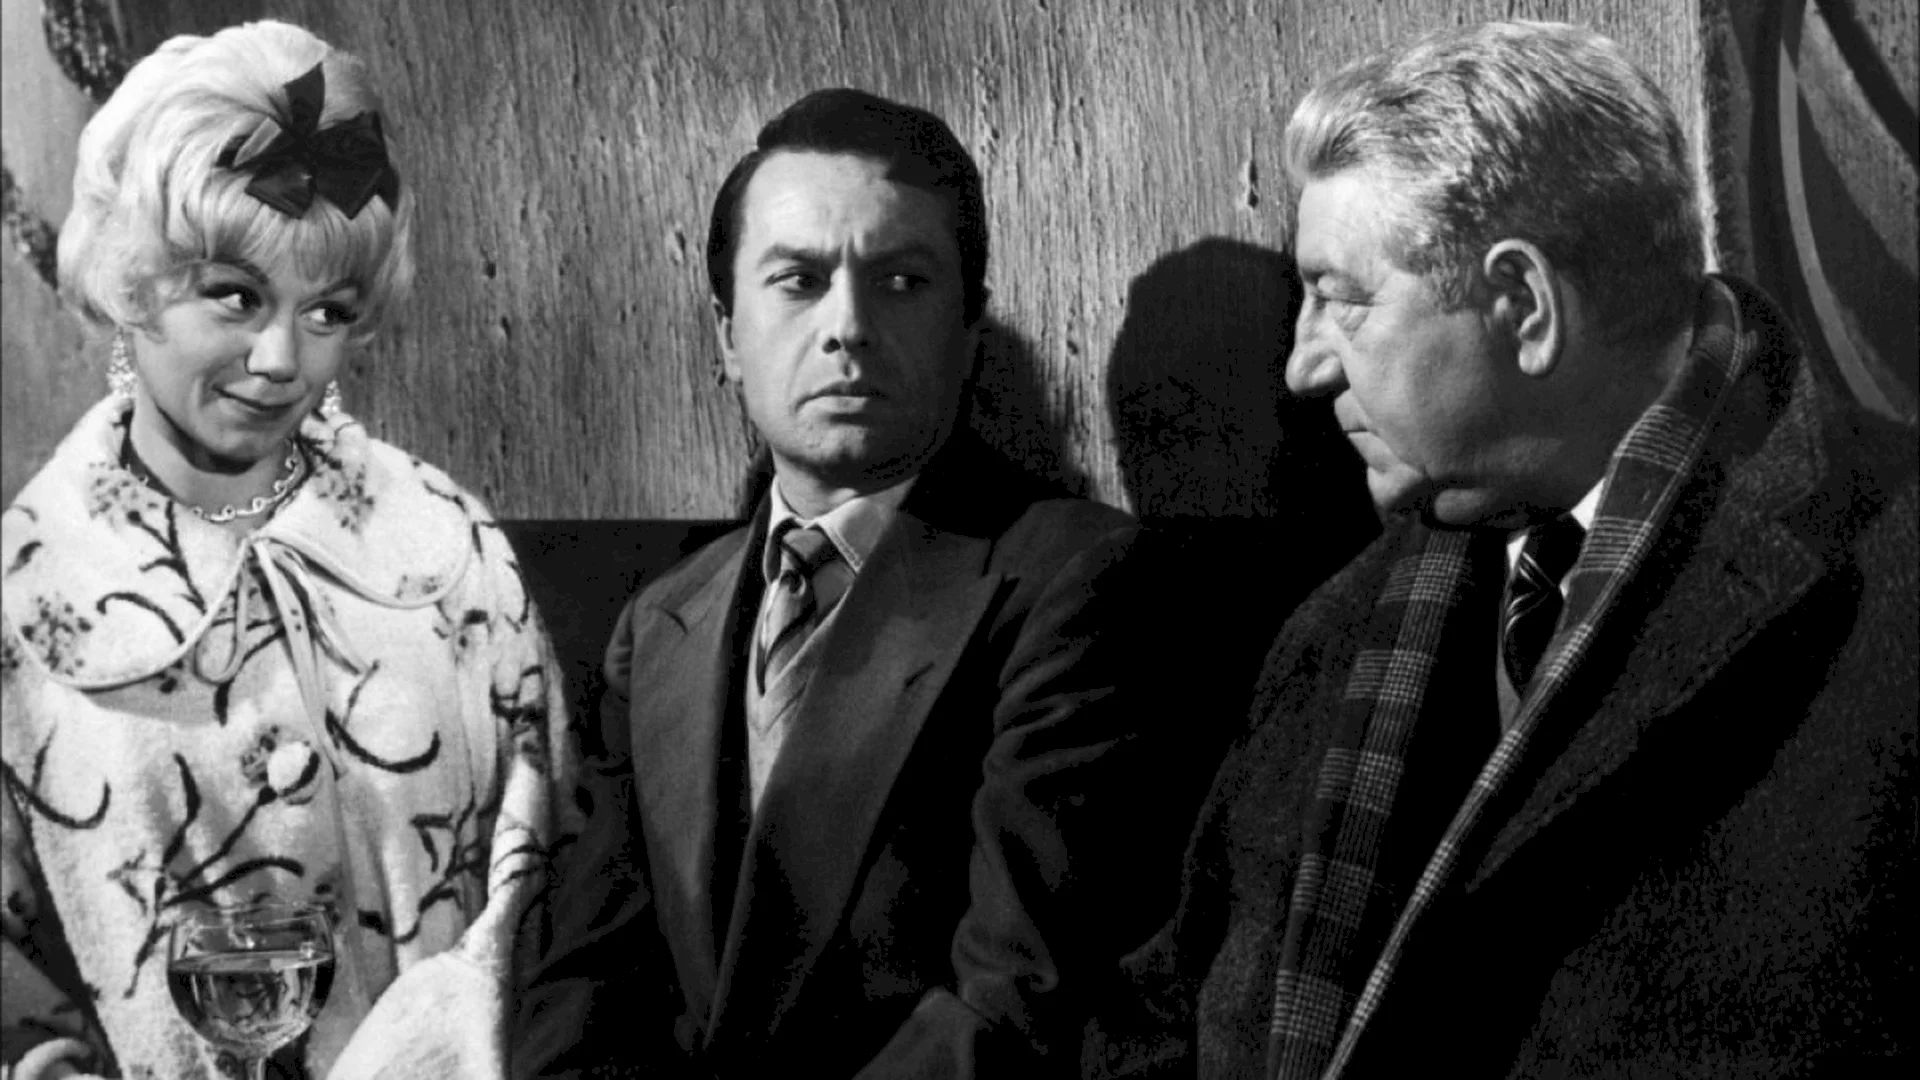 Photo du film : Maigret et l'affaire saint fiacre